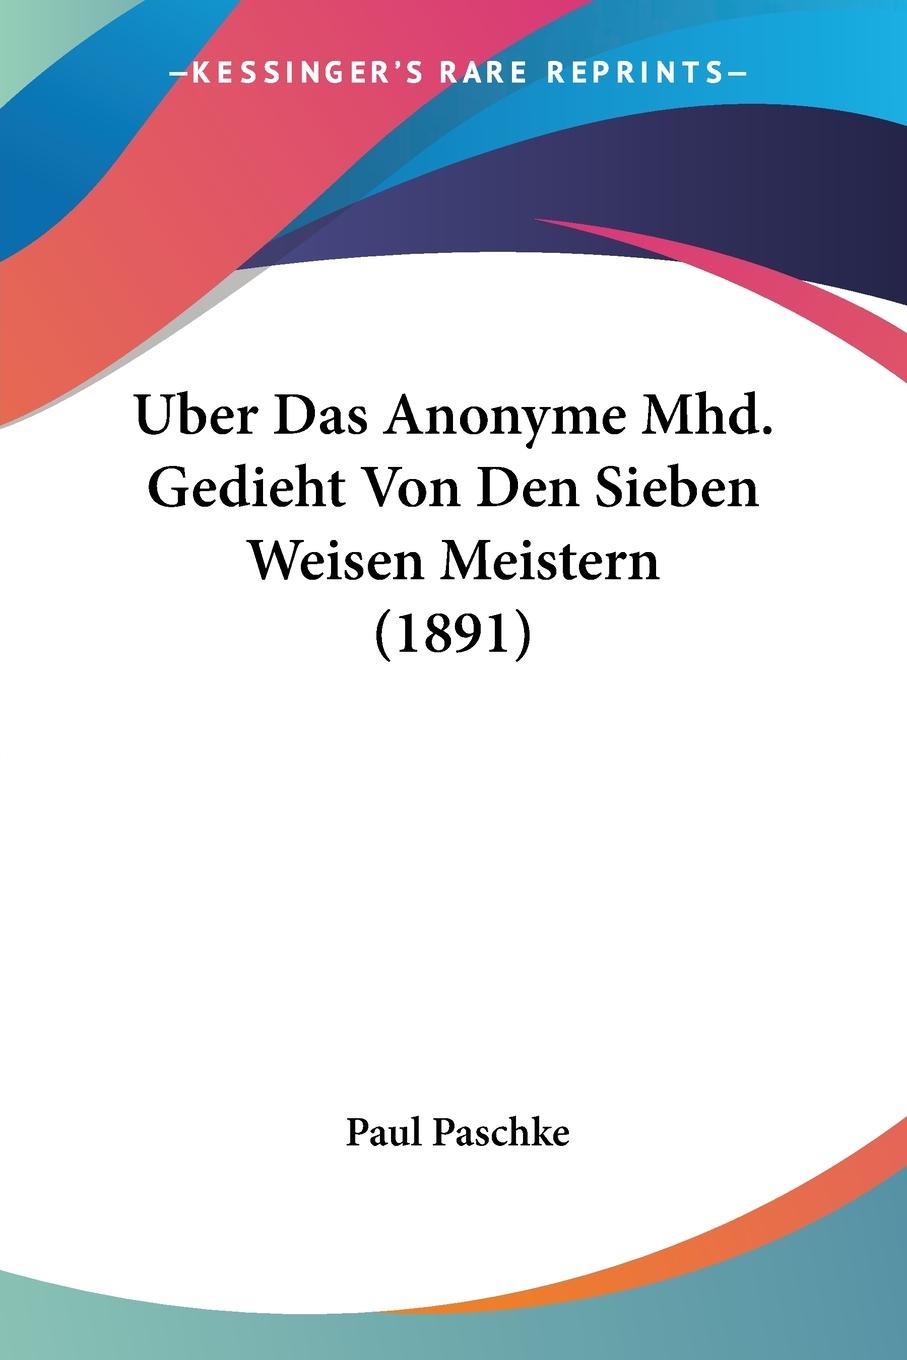 Uber Das Anonyme Mhd. Gedieht Von Den Sieben Weisen Meistern (1891) - Paschke, Paul